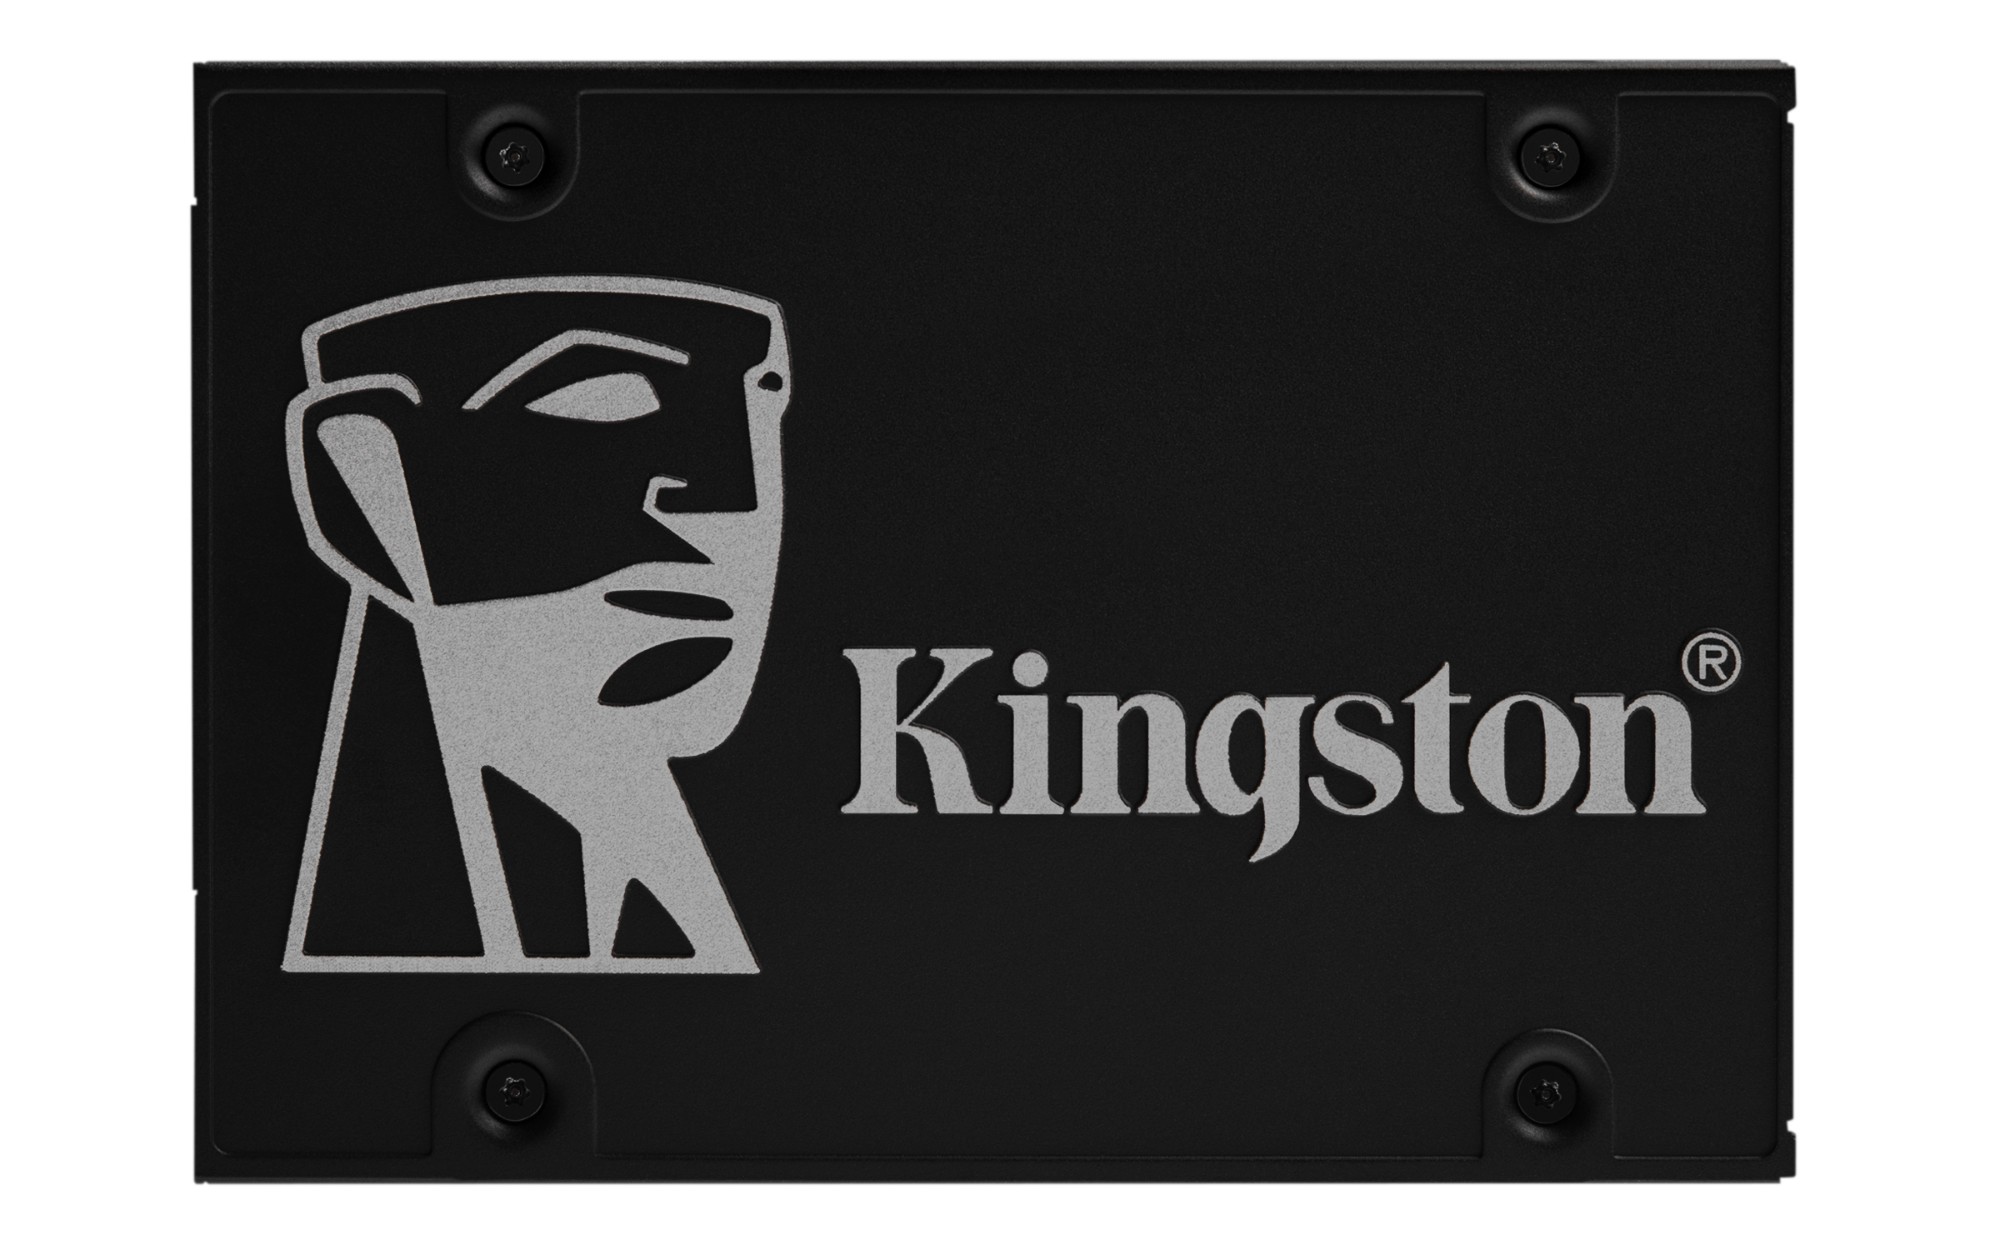 Kingston Technology KC600 2.5